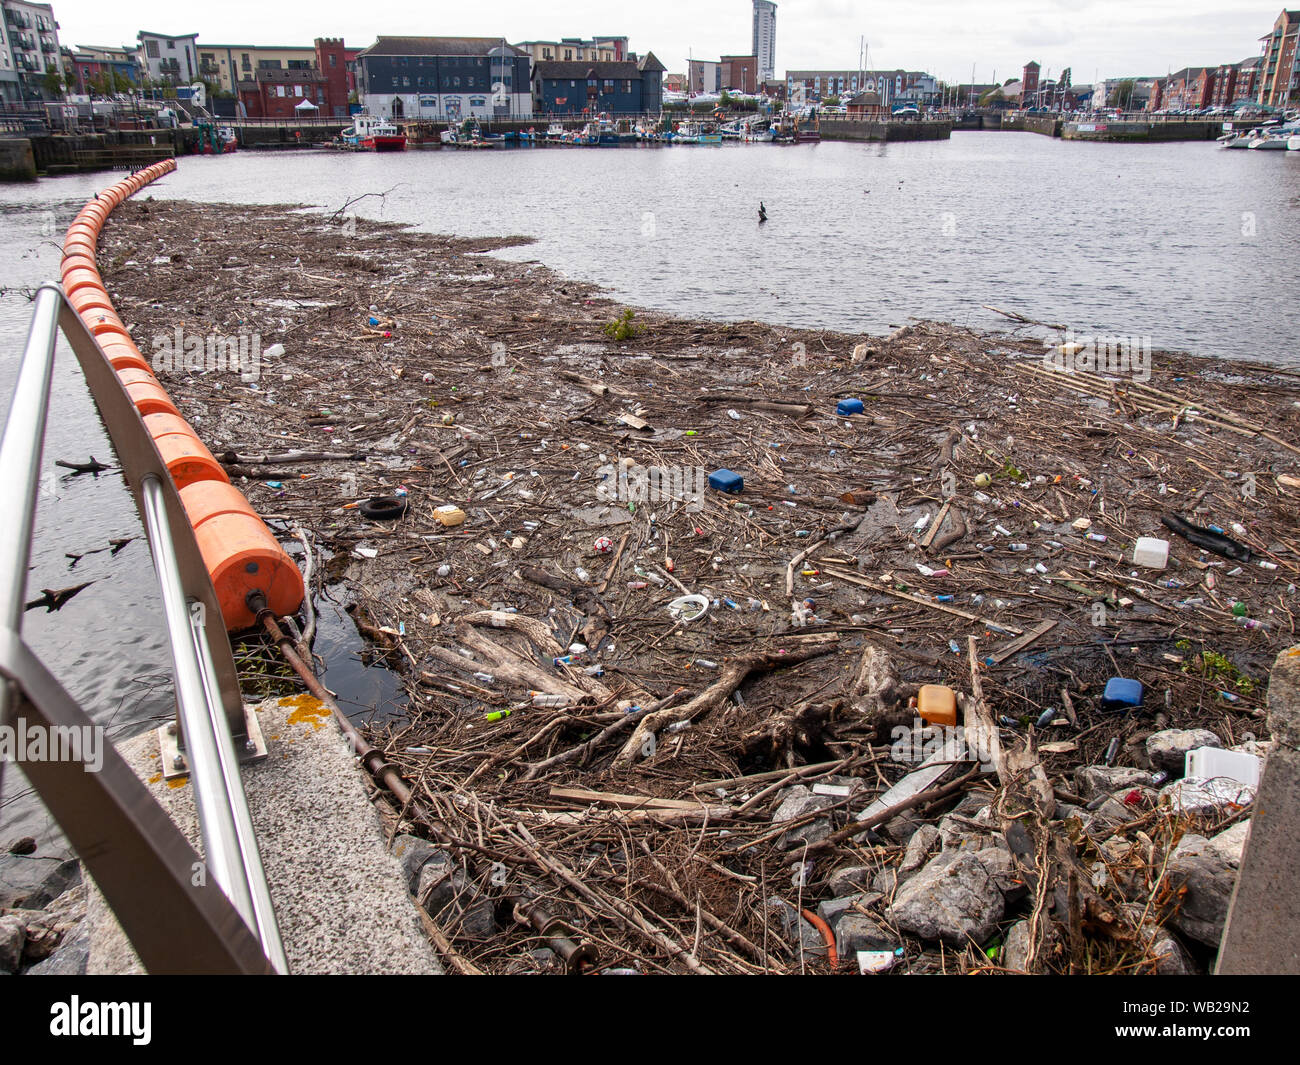 Barrière flottante pleine de détritus, de bois, des bouteilles en plastique et autres déchets près de la l'embouchure de la rivière Tawe à Swansea, Pays de Galles, Royaume-Uni. Banque D'Images